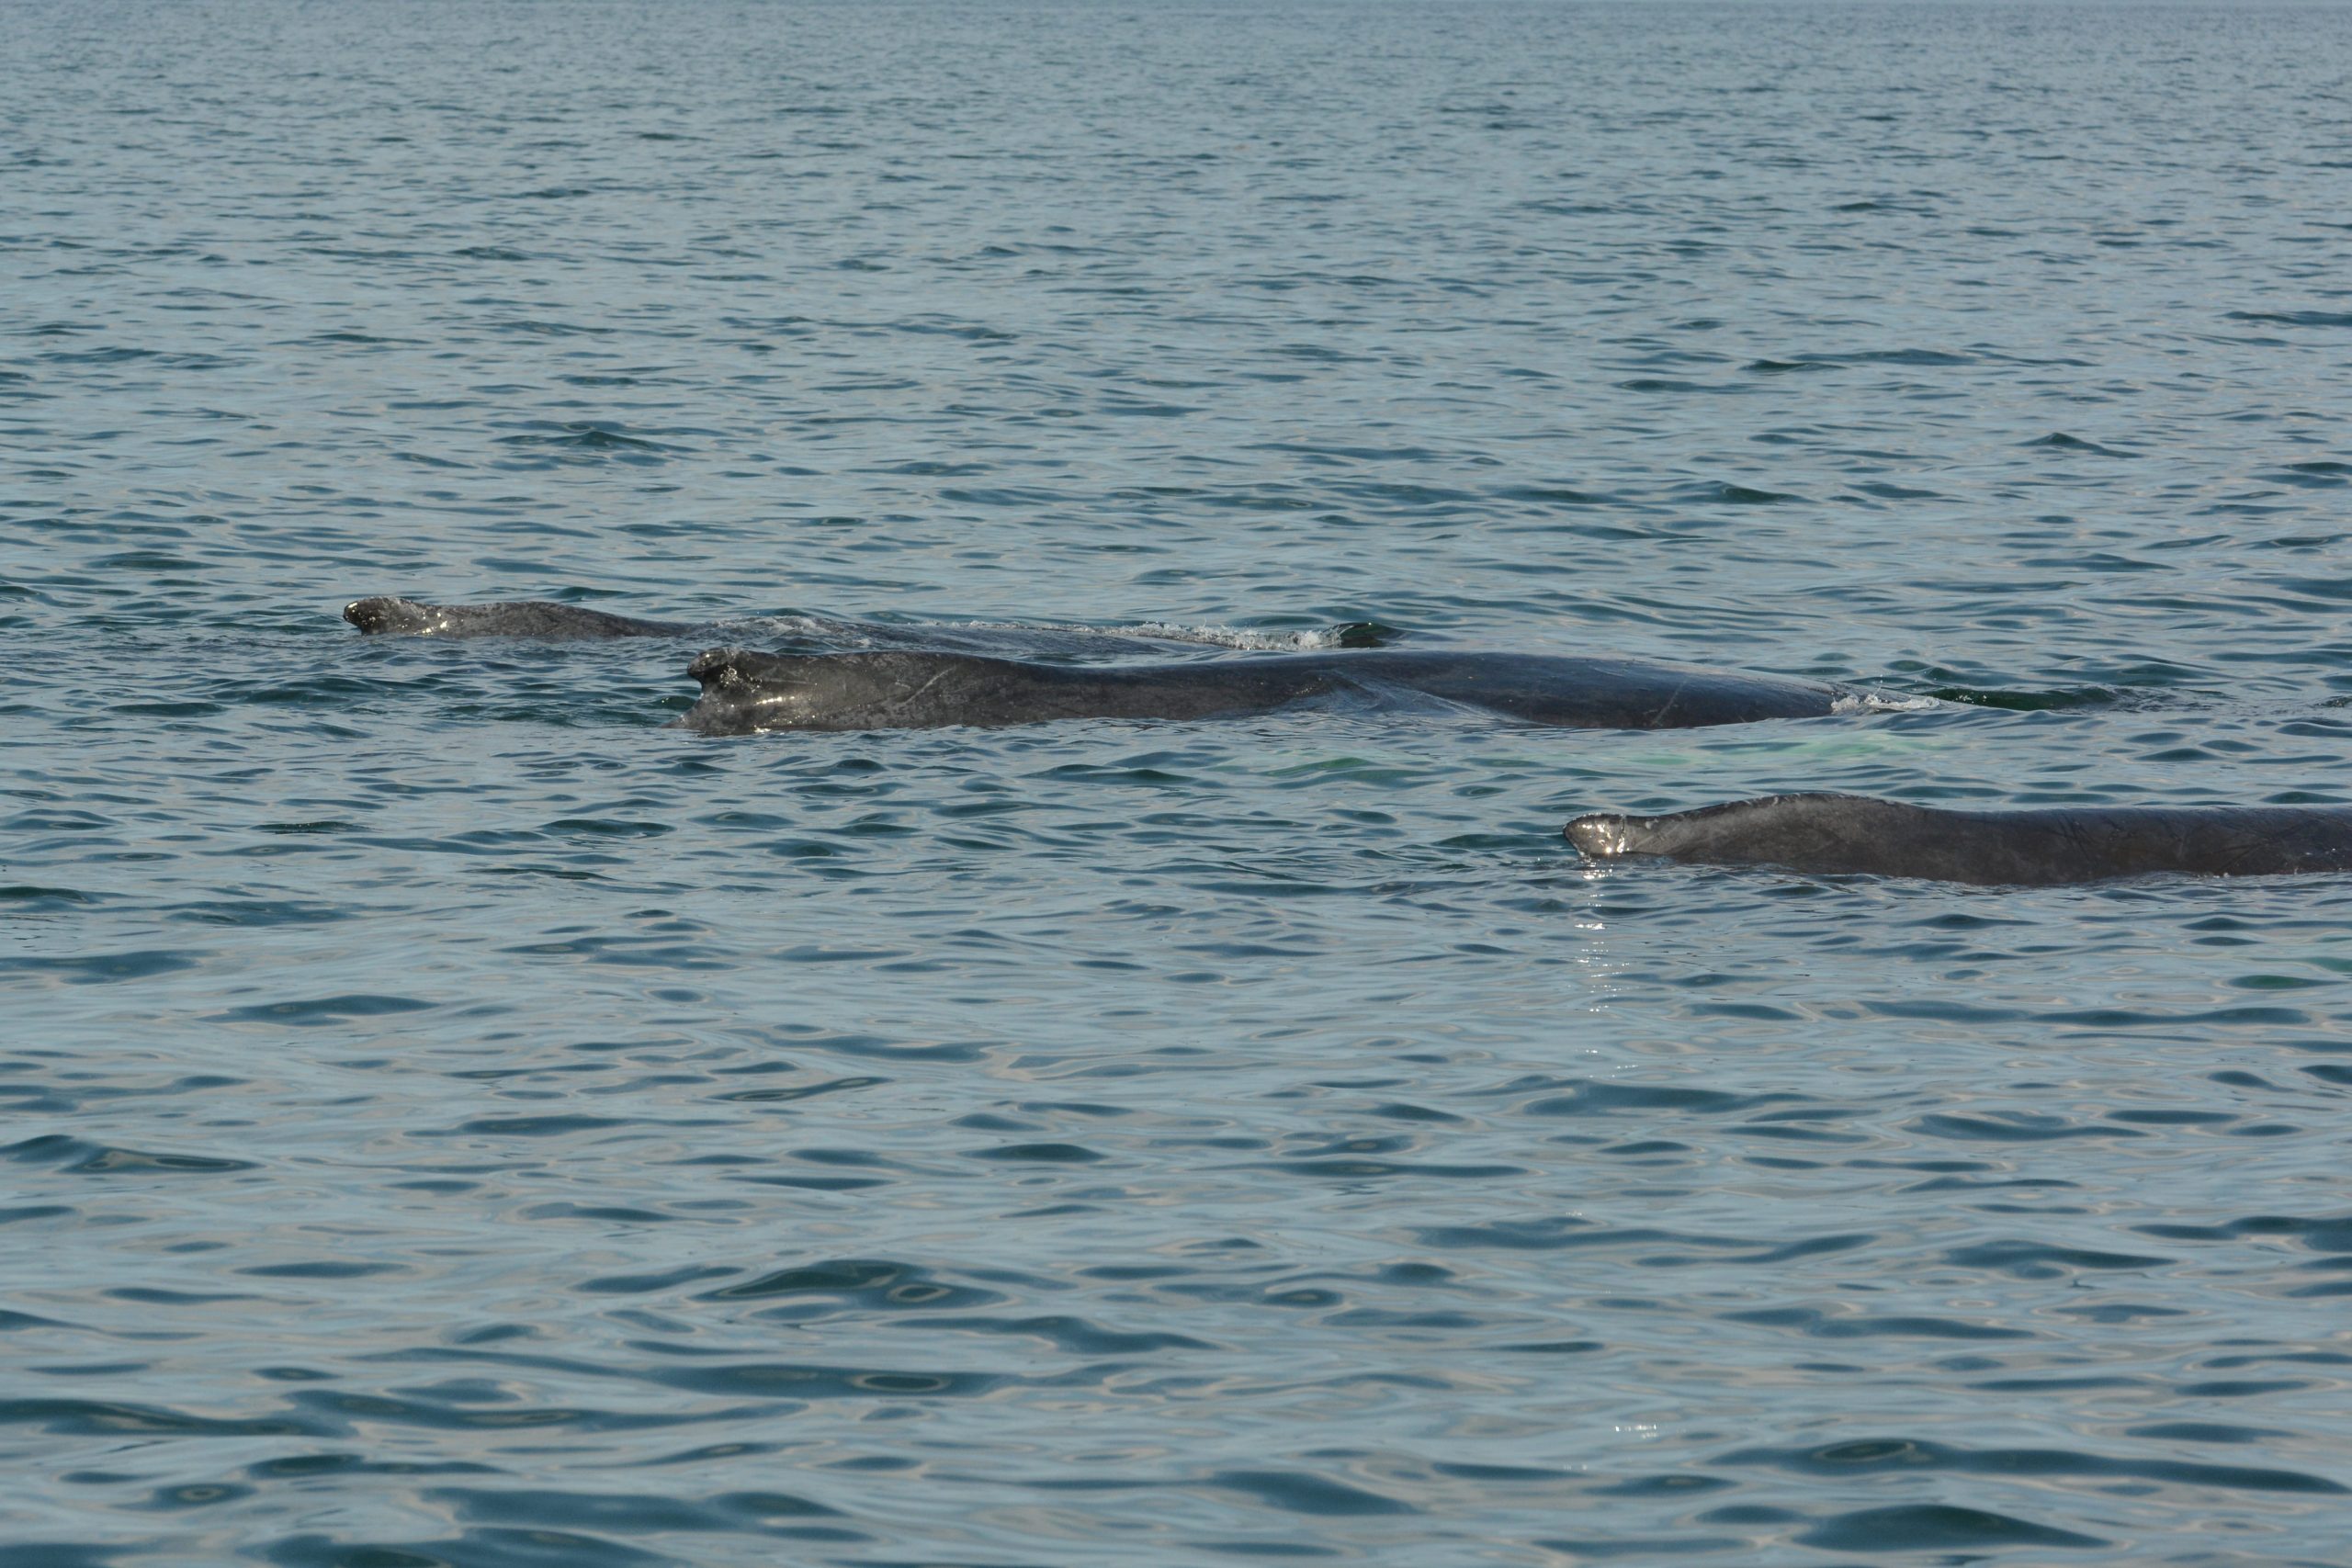 three humpback whales surfacing